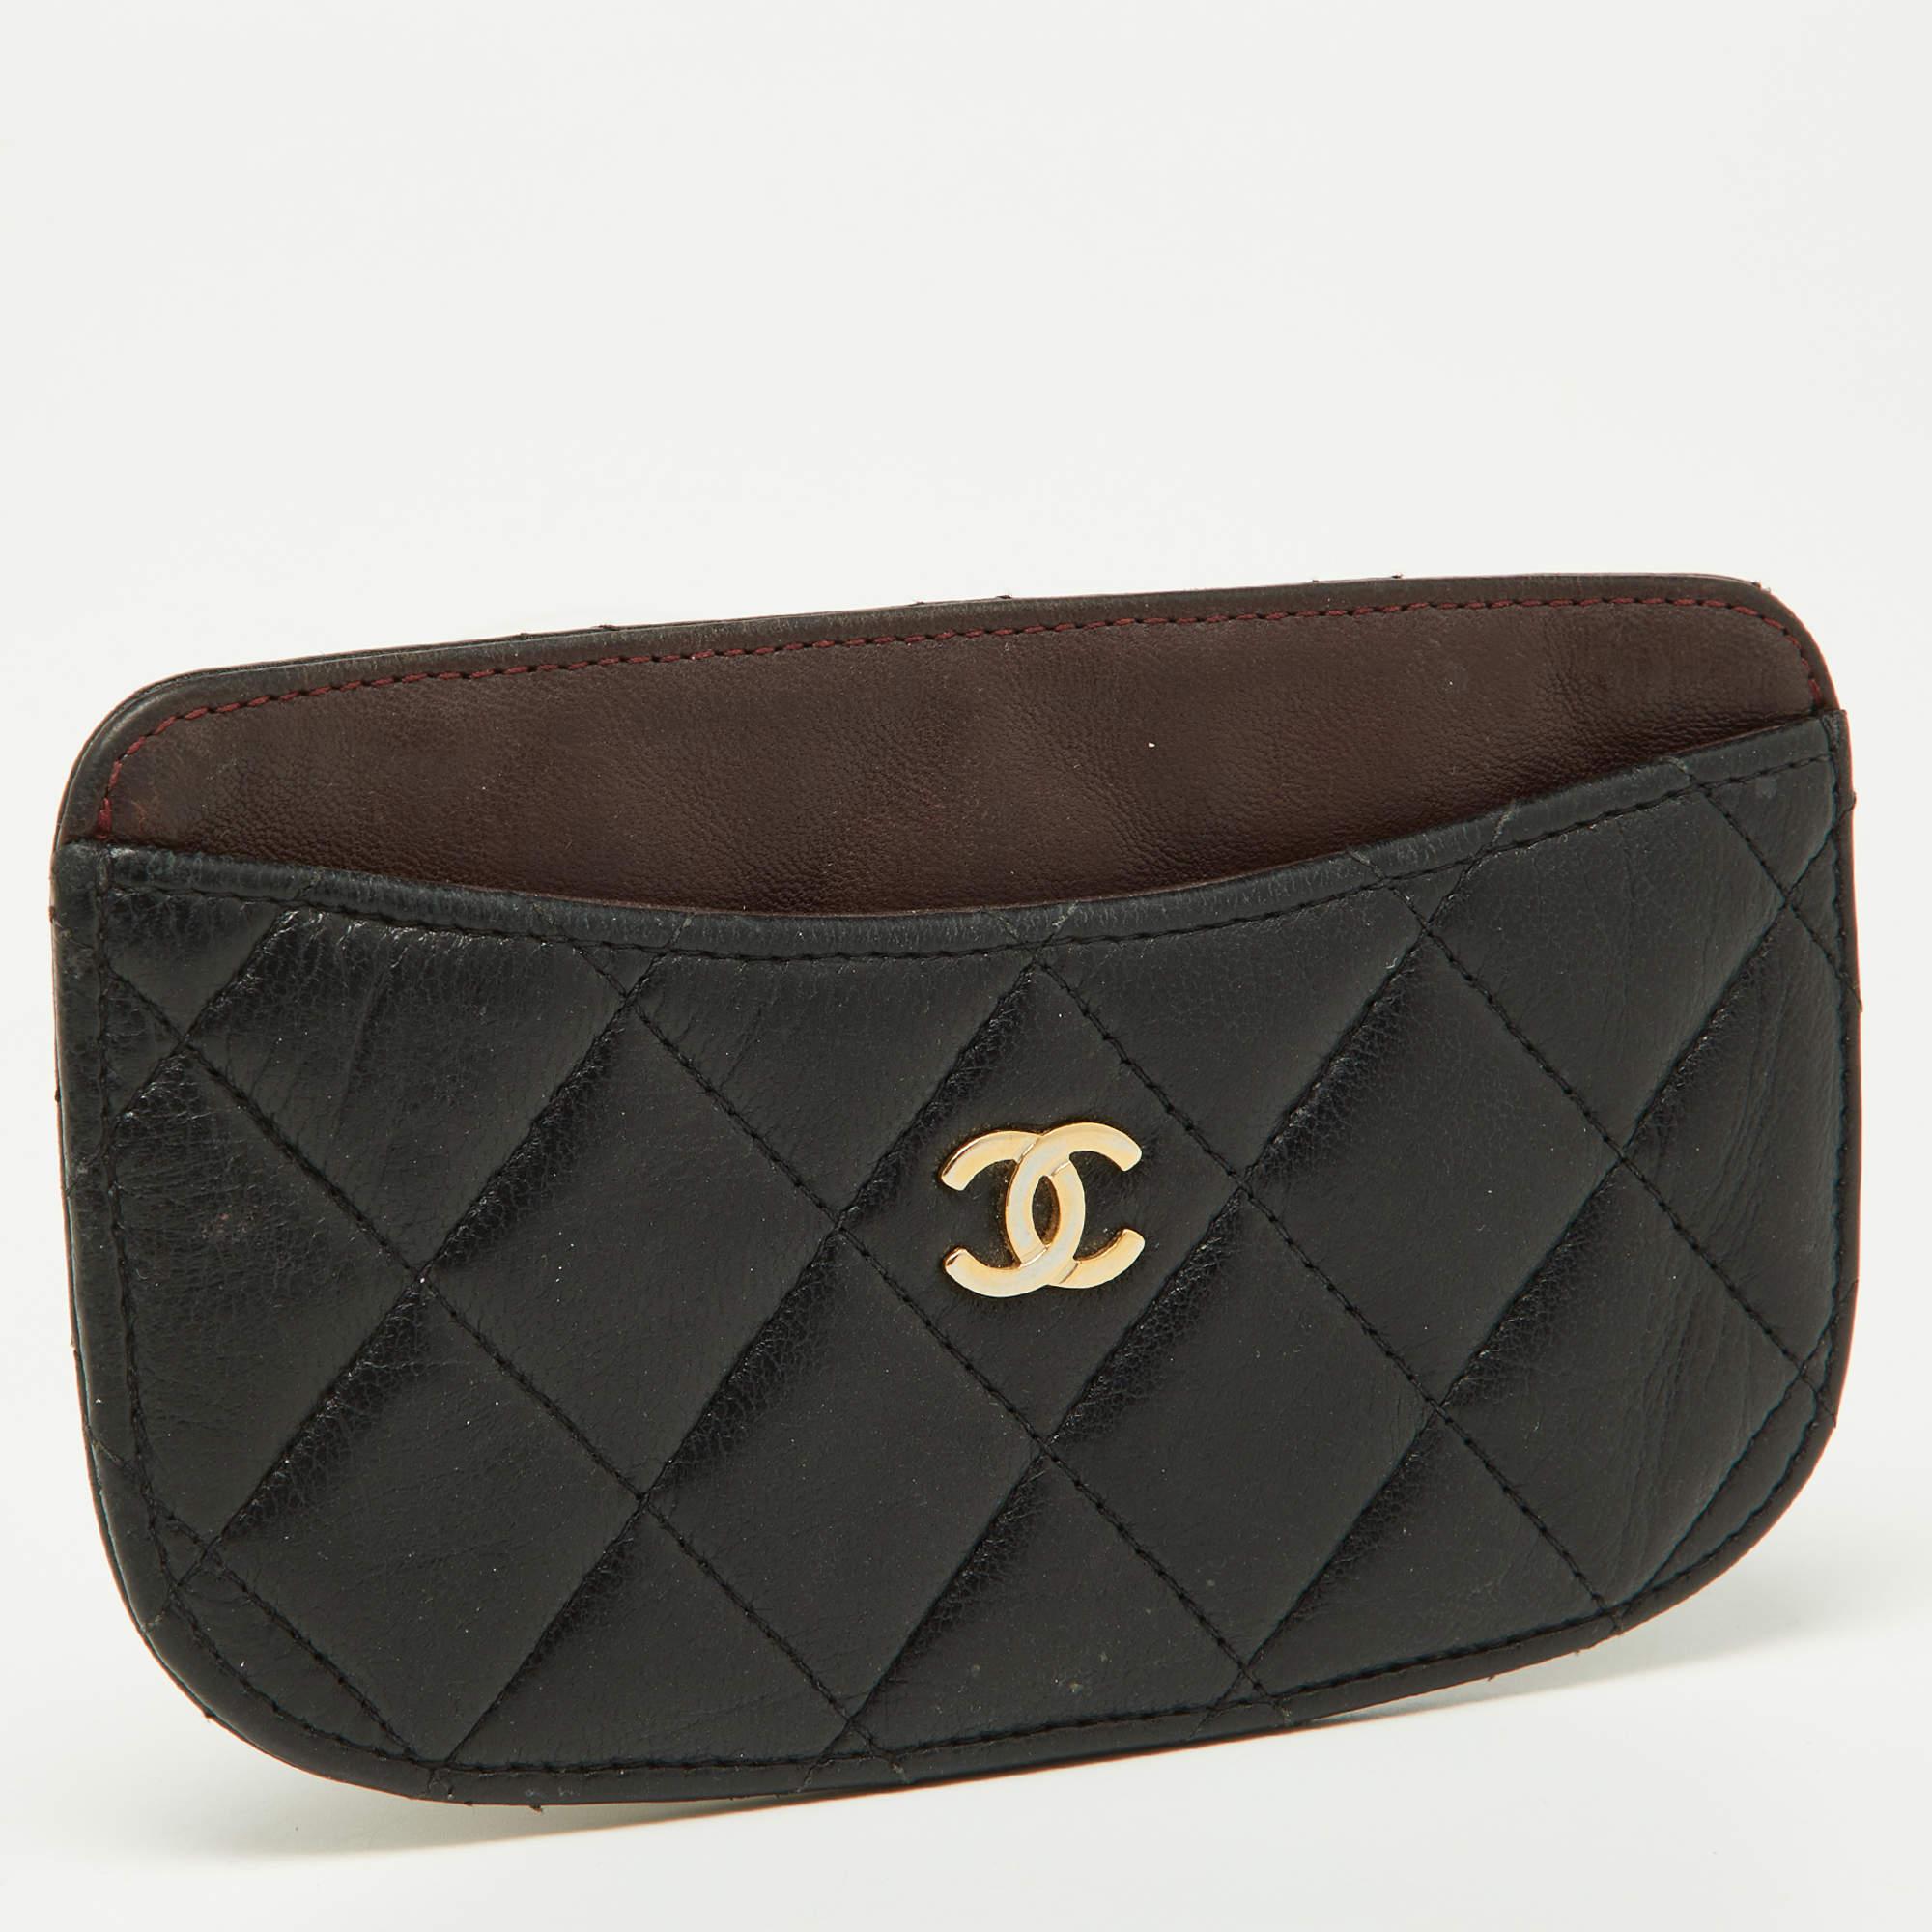 Tragen Sie Ihre Kreditkarten stilvoll mit diesem Chanel Kartenetui aus Leder. Sie hat eine gesteppte Außenseite mit zwei Steckfächern auf der Vorder- und Rückseite, einem zentralen Steckfach und einem silberfarbenen CC-Logo.

